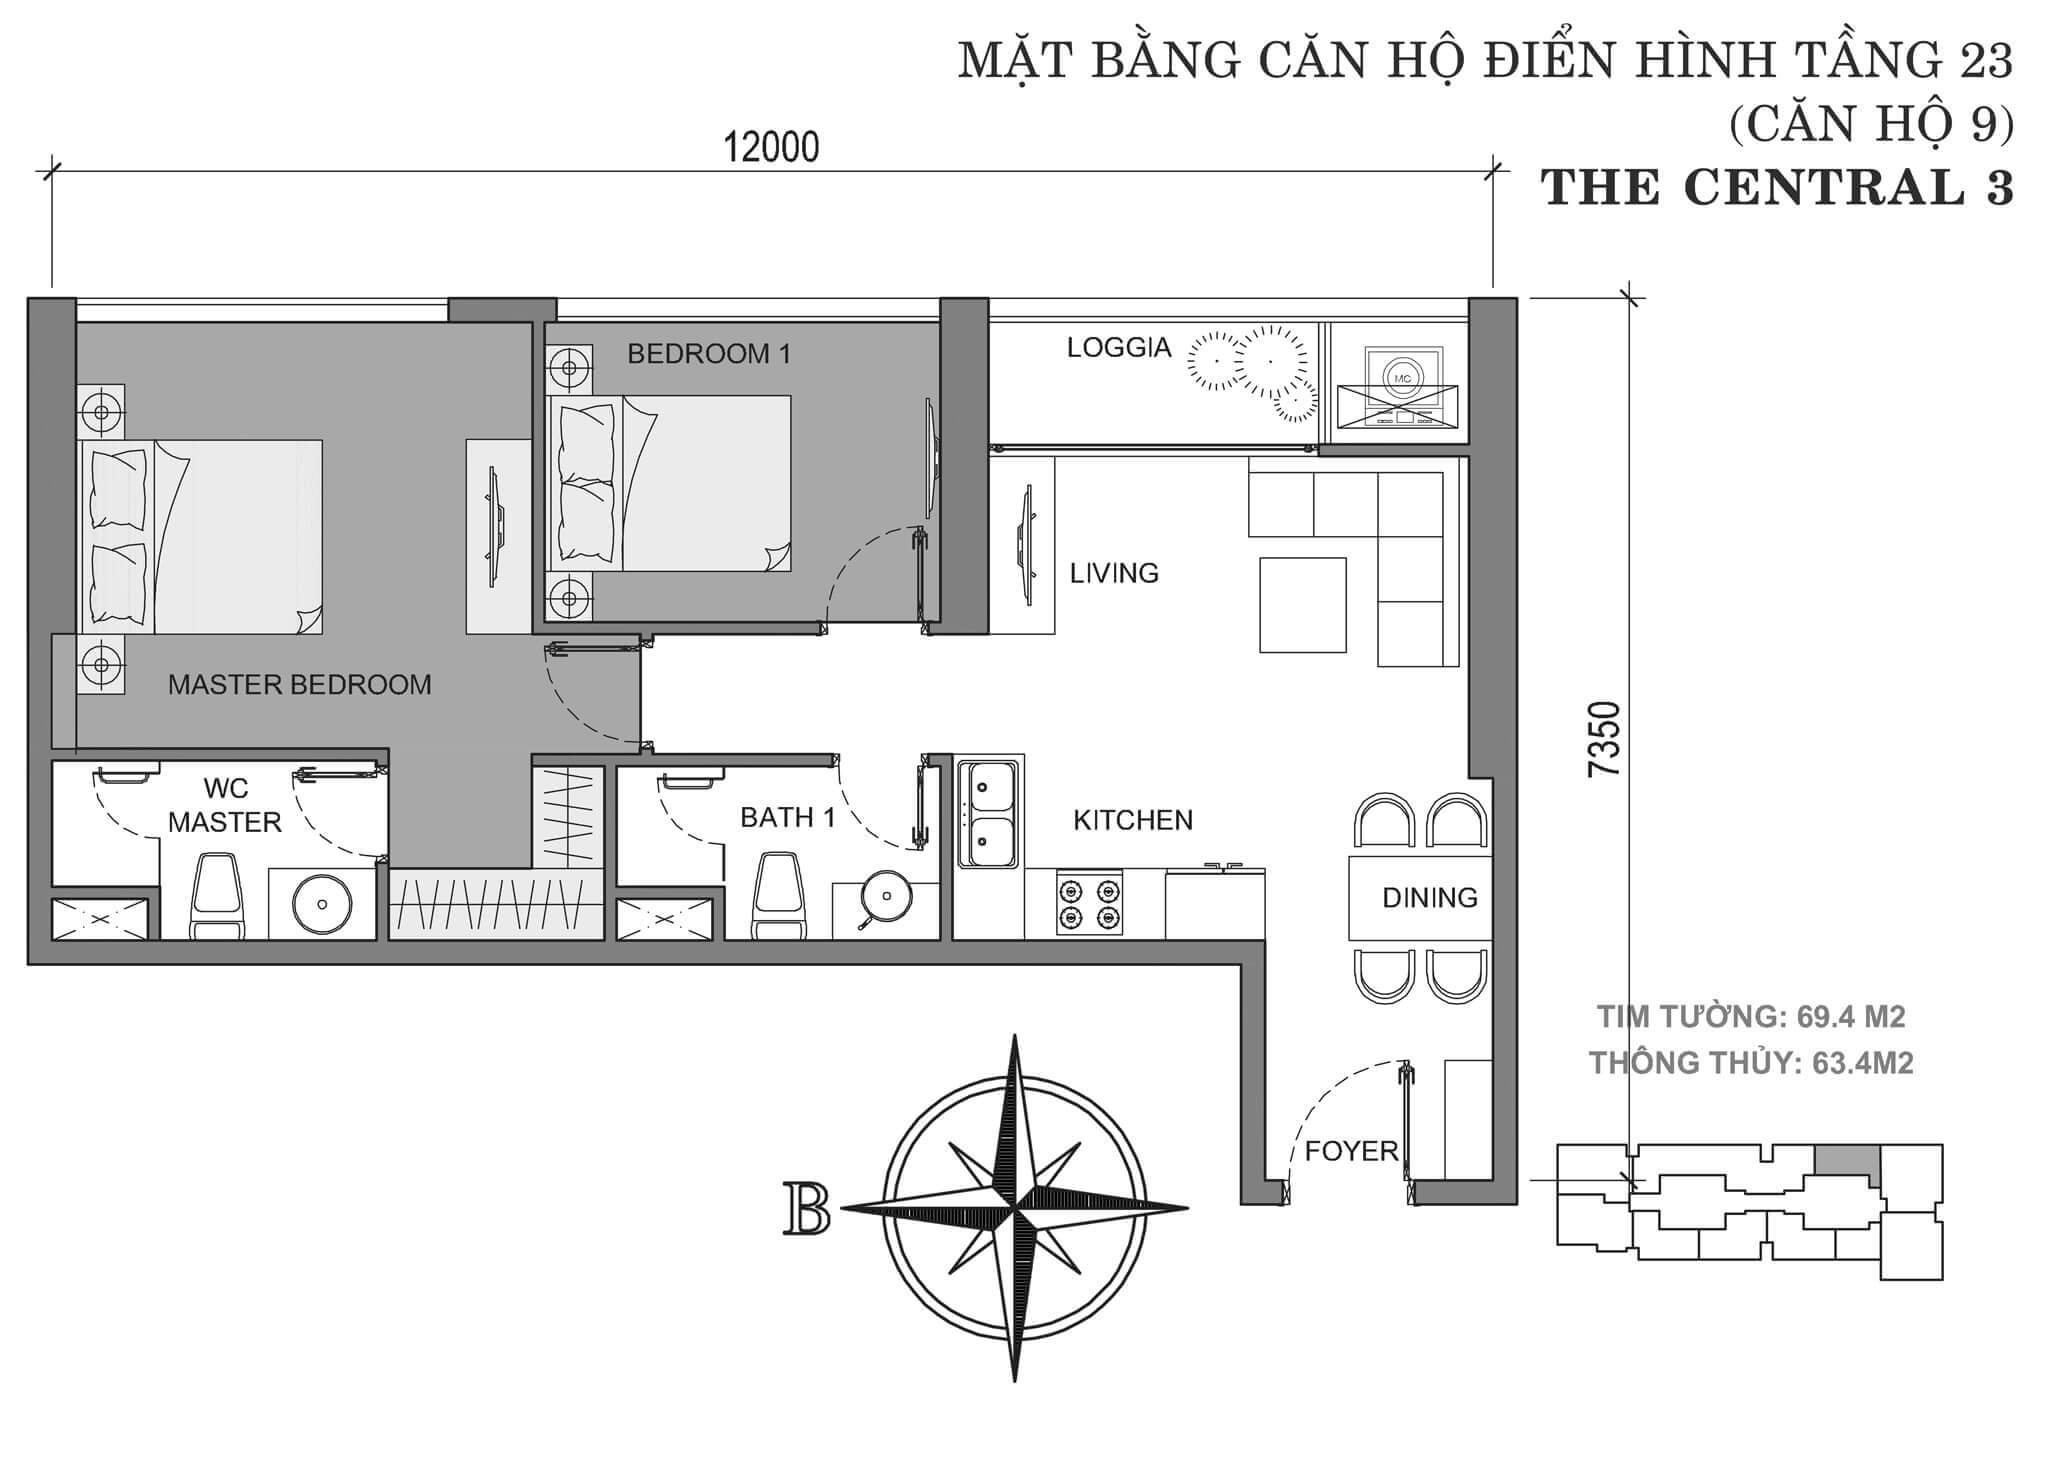 layout căn hộ số 9 tòa Central 3 tầng 23